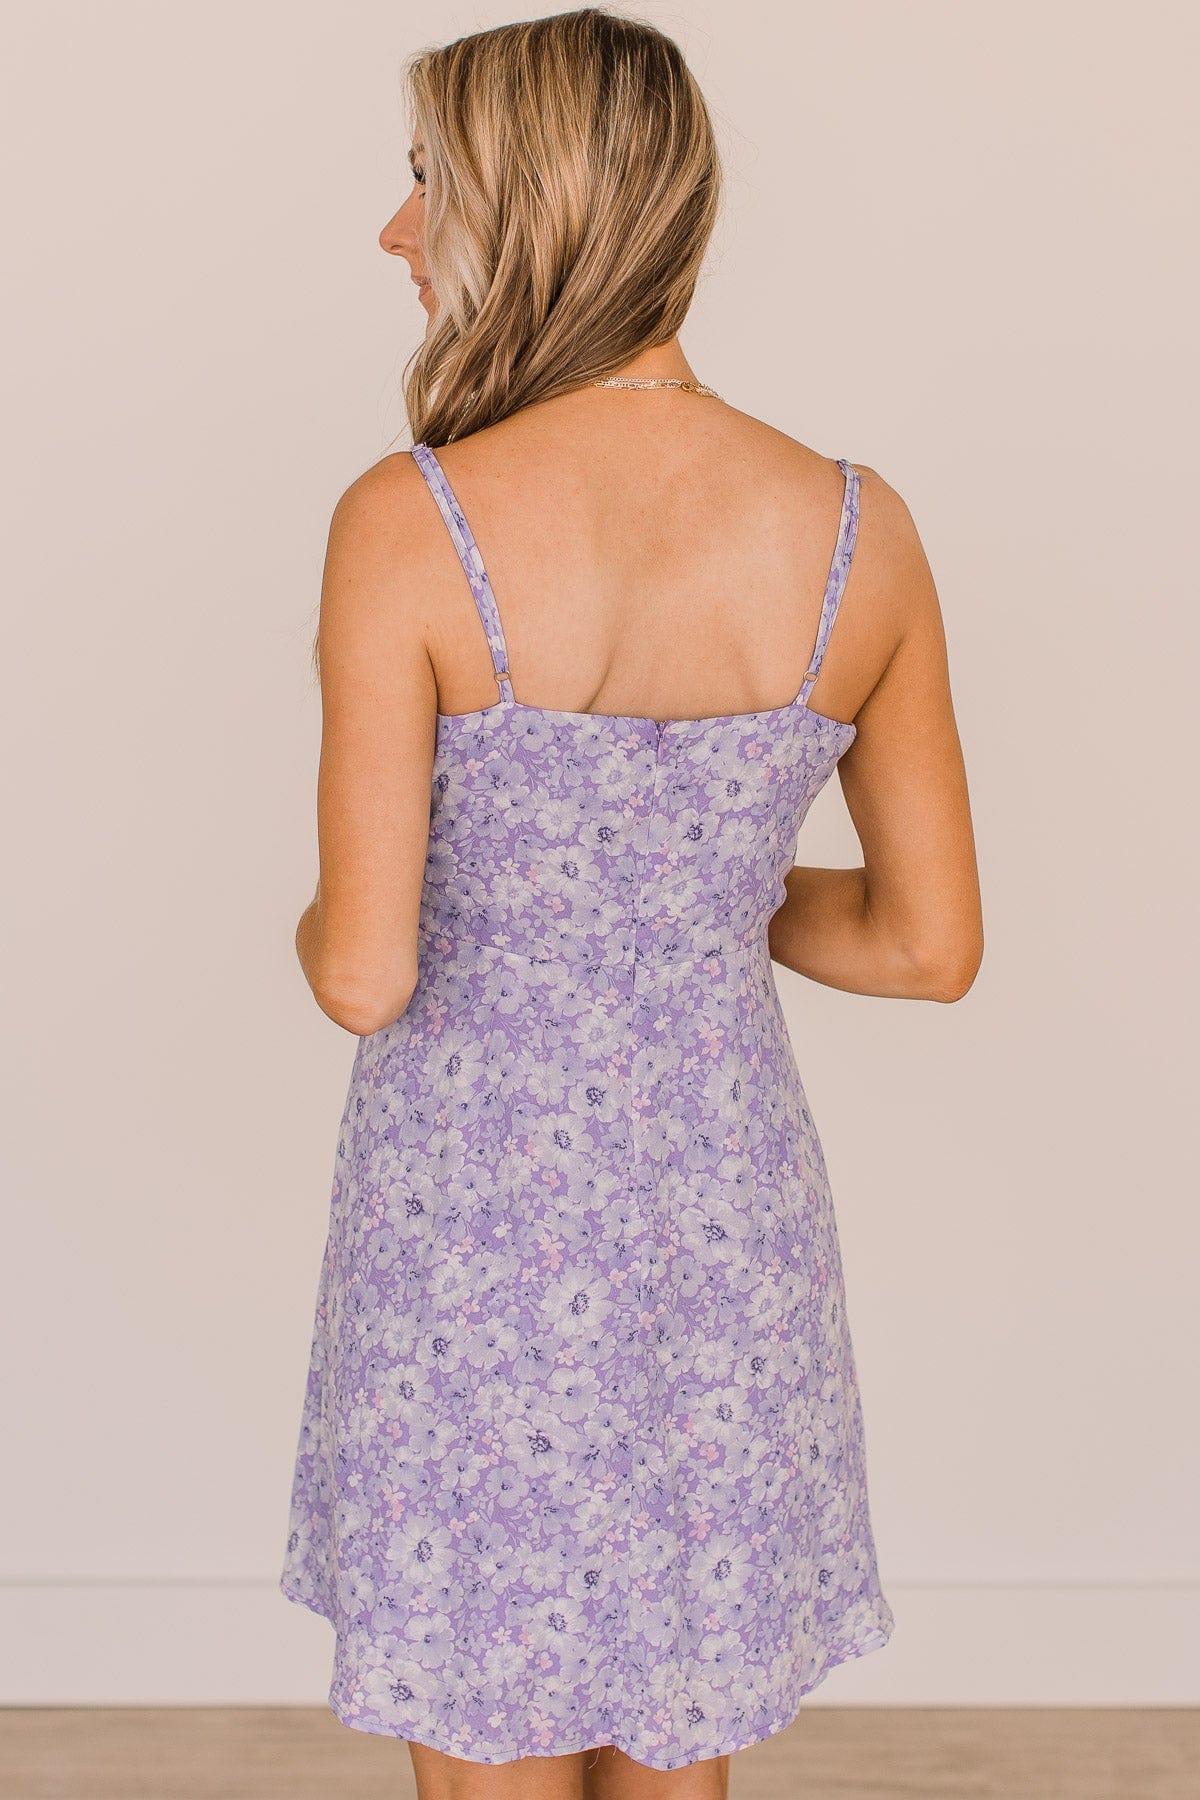 Spring Fling Floral Dress- Lavender